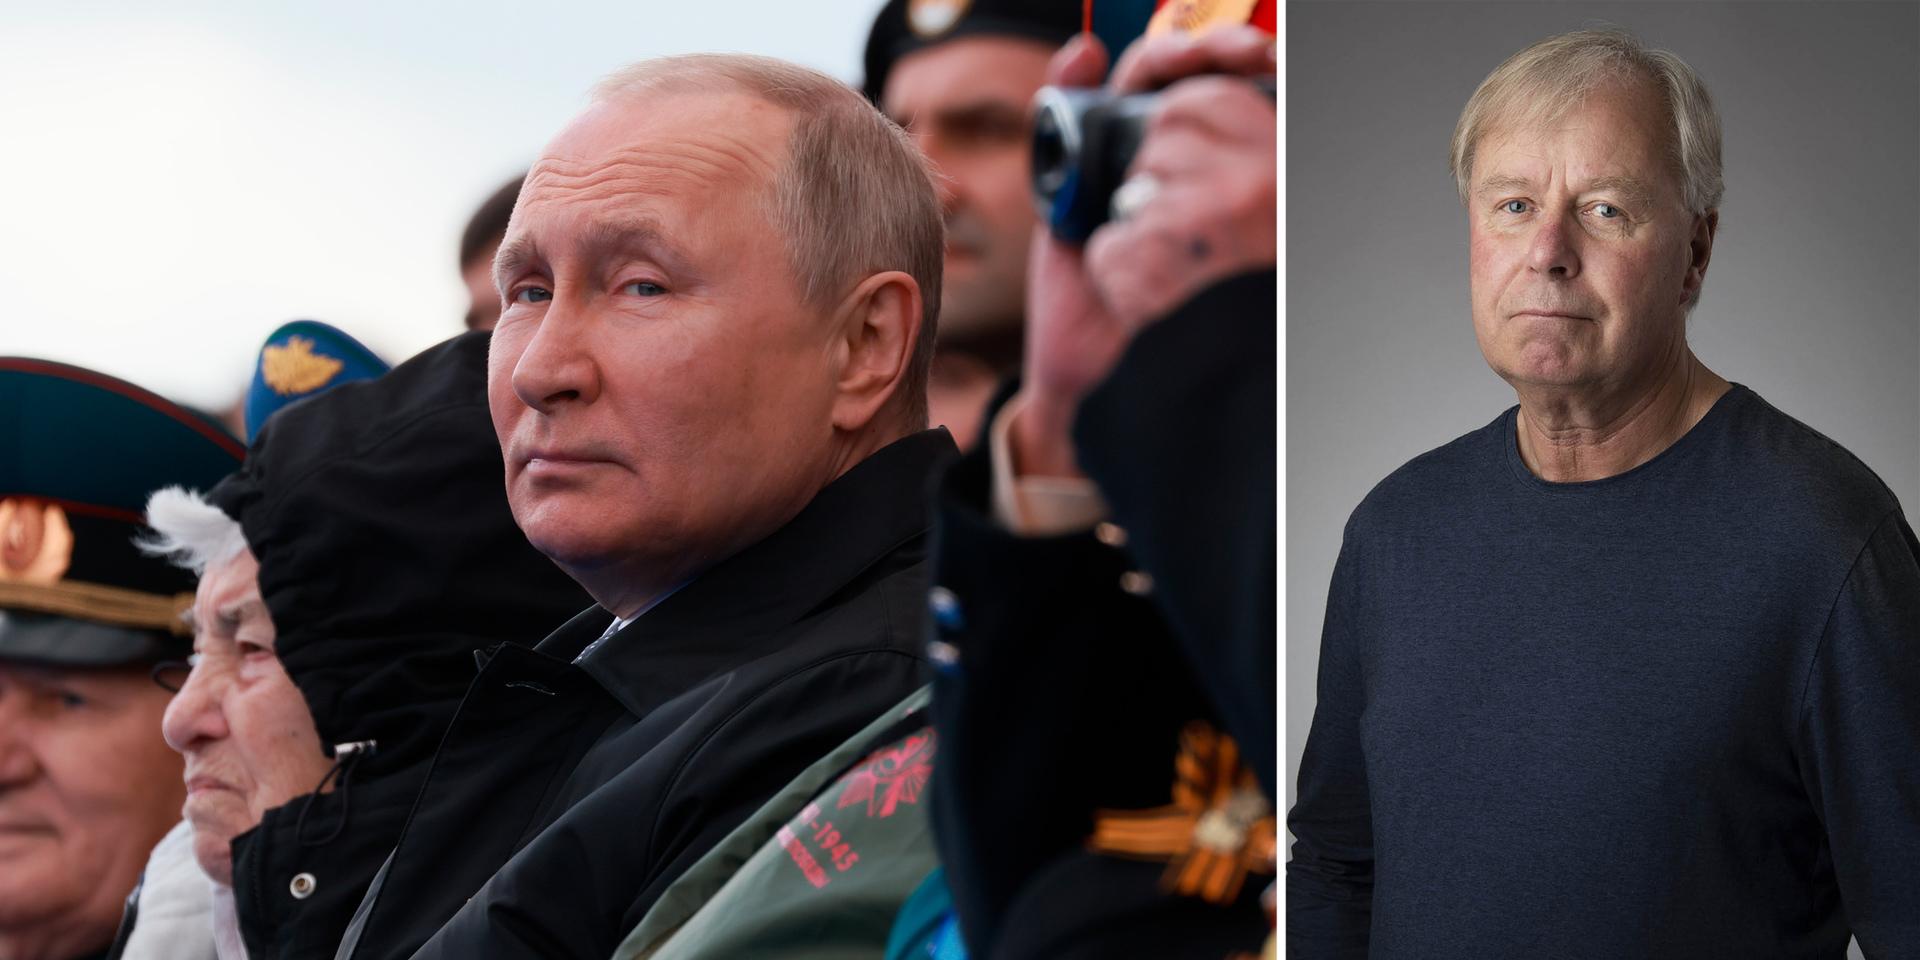 Putins strävan efter revansch får katastrofala följder, skriver Jan Höglund.